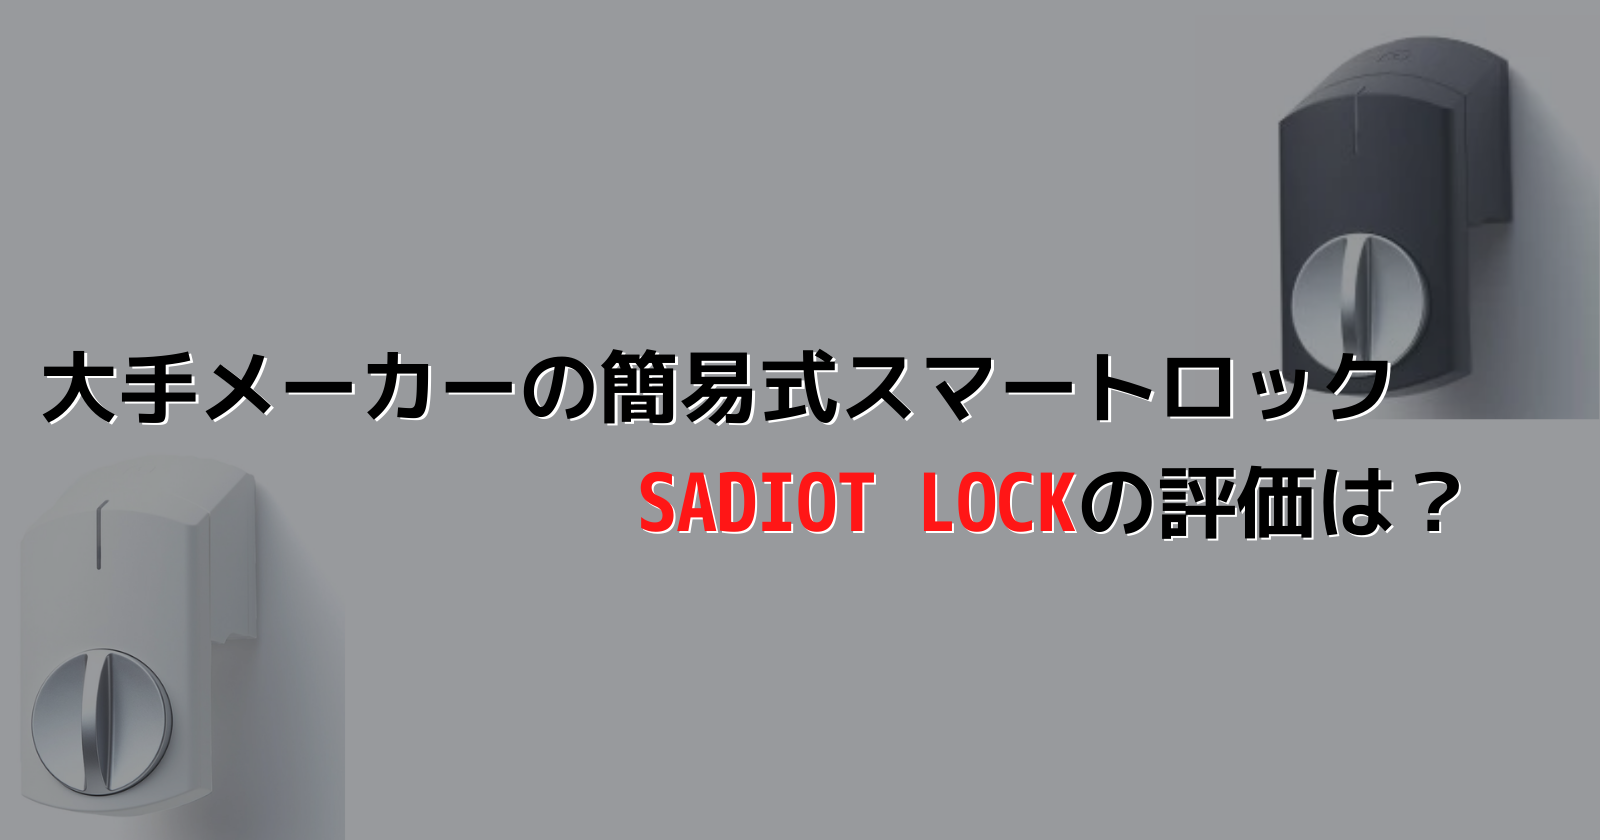 22年5月更新】【簡易スマートロック】SADIOT LOCKの使い心地や評判【ユーシン・ショウワ】 | スマートロックプロ